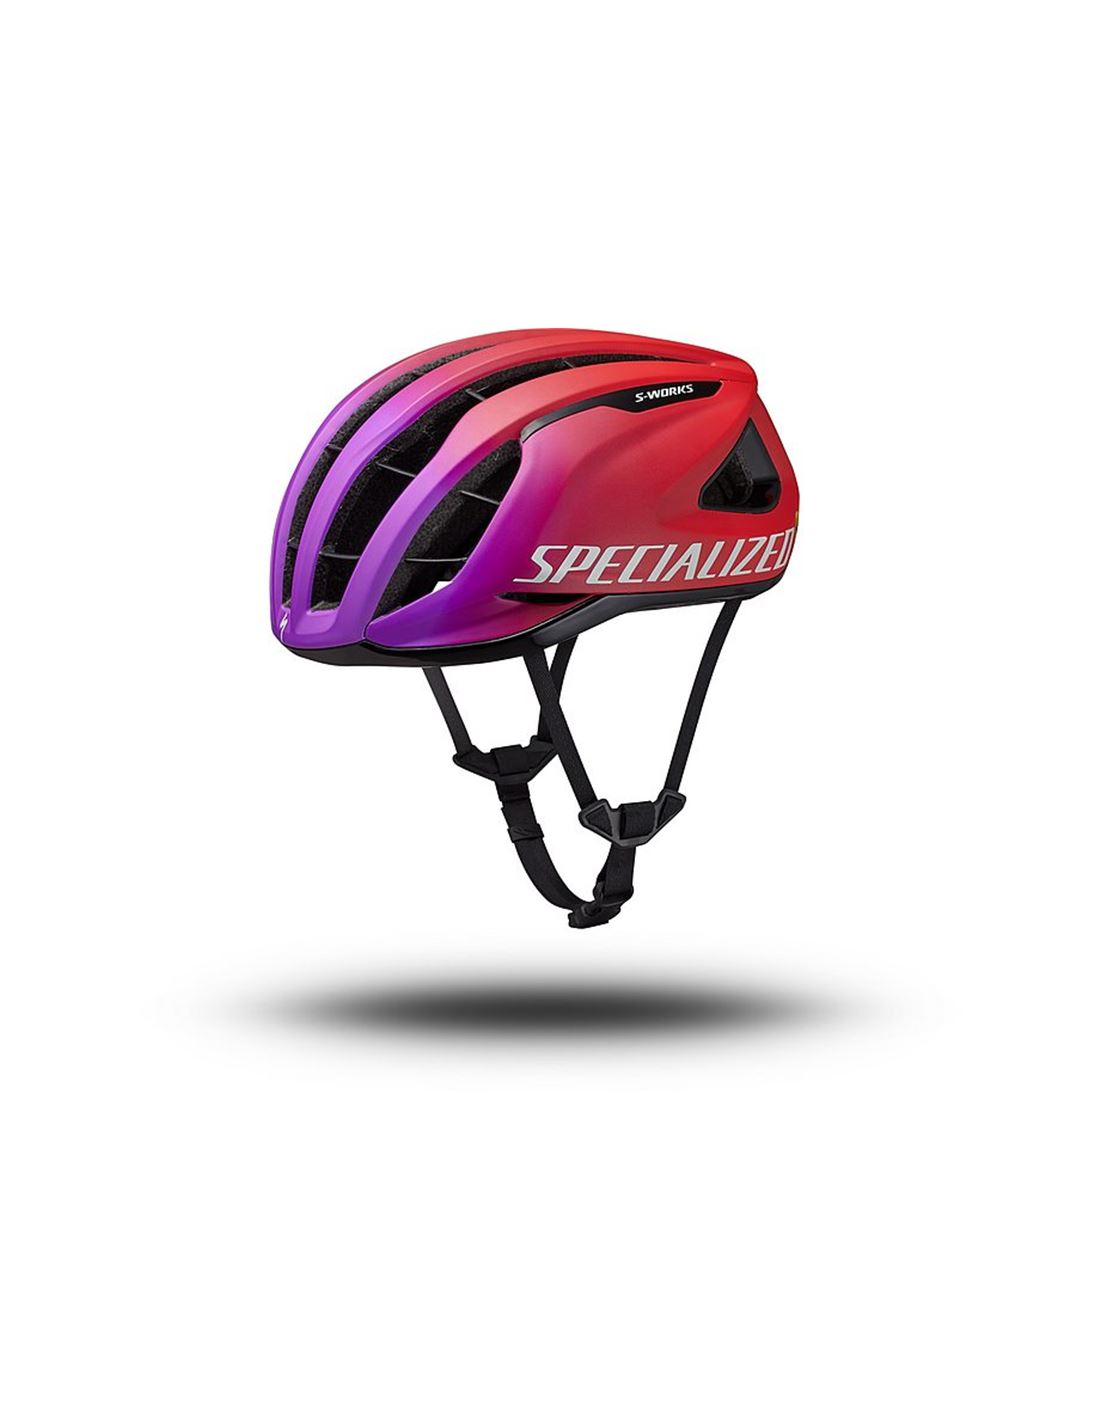 adultos personalizados casco bicicleta de montaña casco